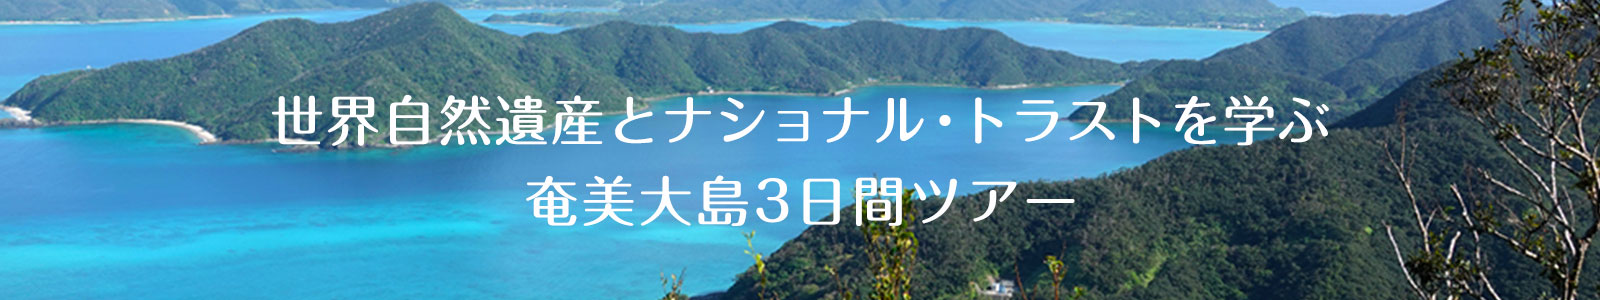 世界自然遺産とナショナル・トラストを学ぶ 奄美大島3日間ツアー